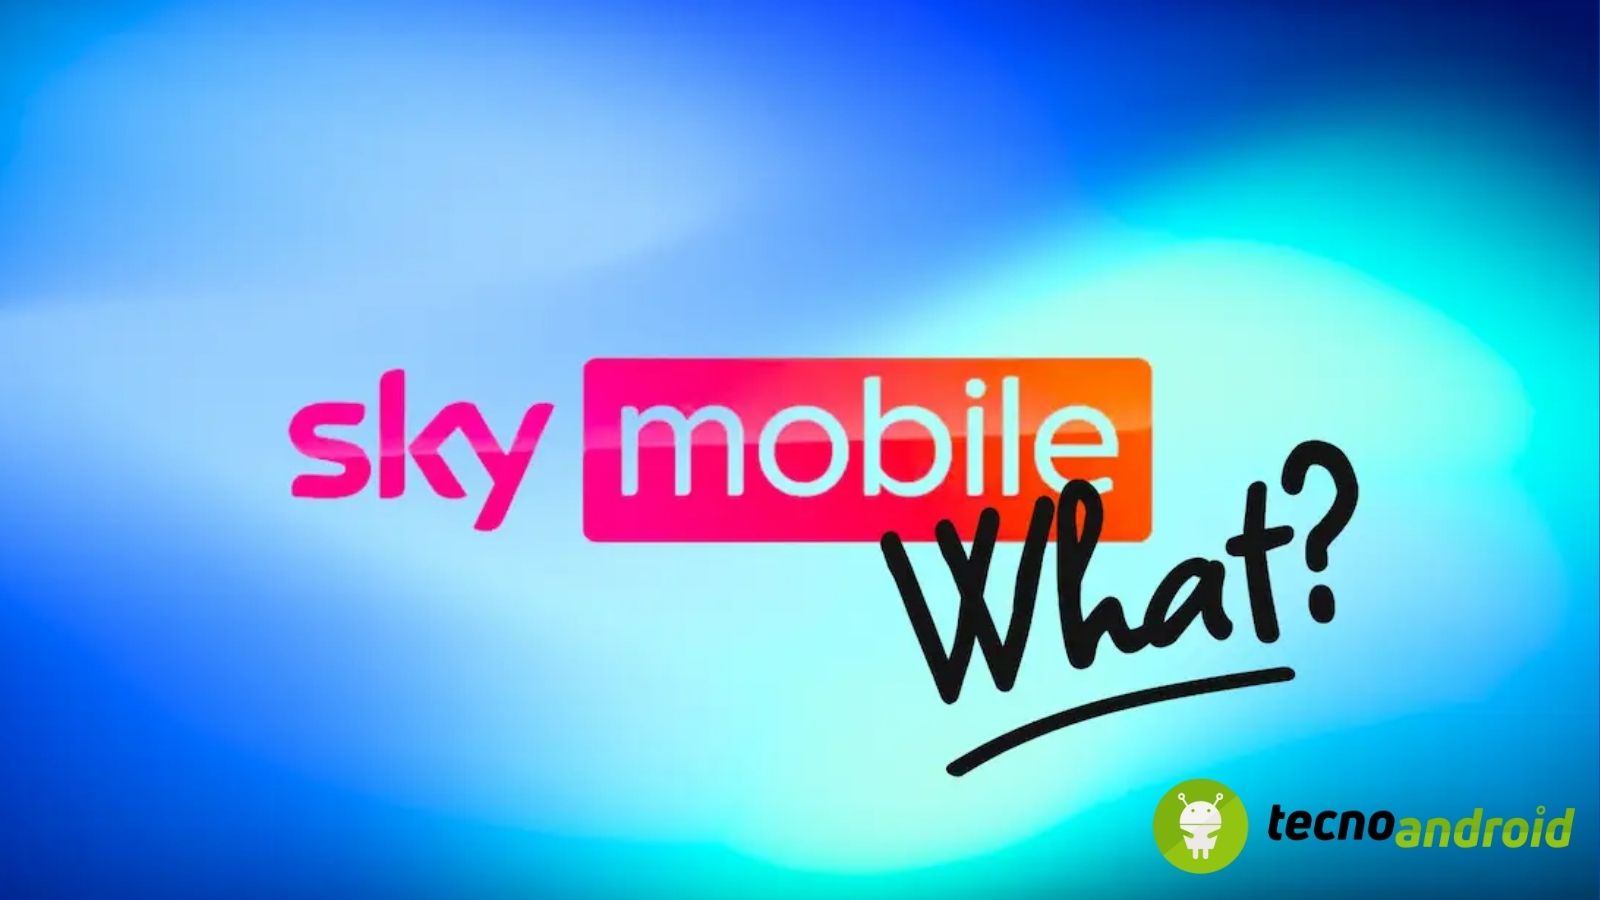 Sky mobile e fastweb nuovo operatore rete mobile